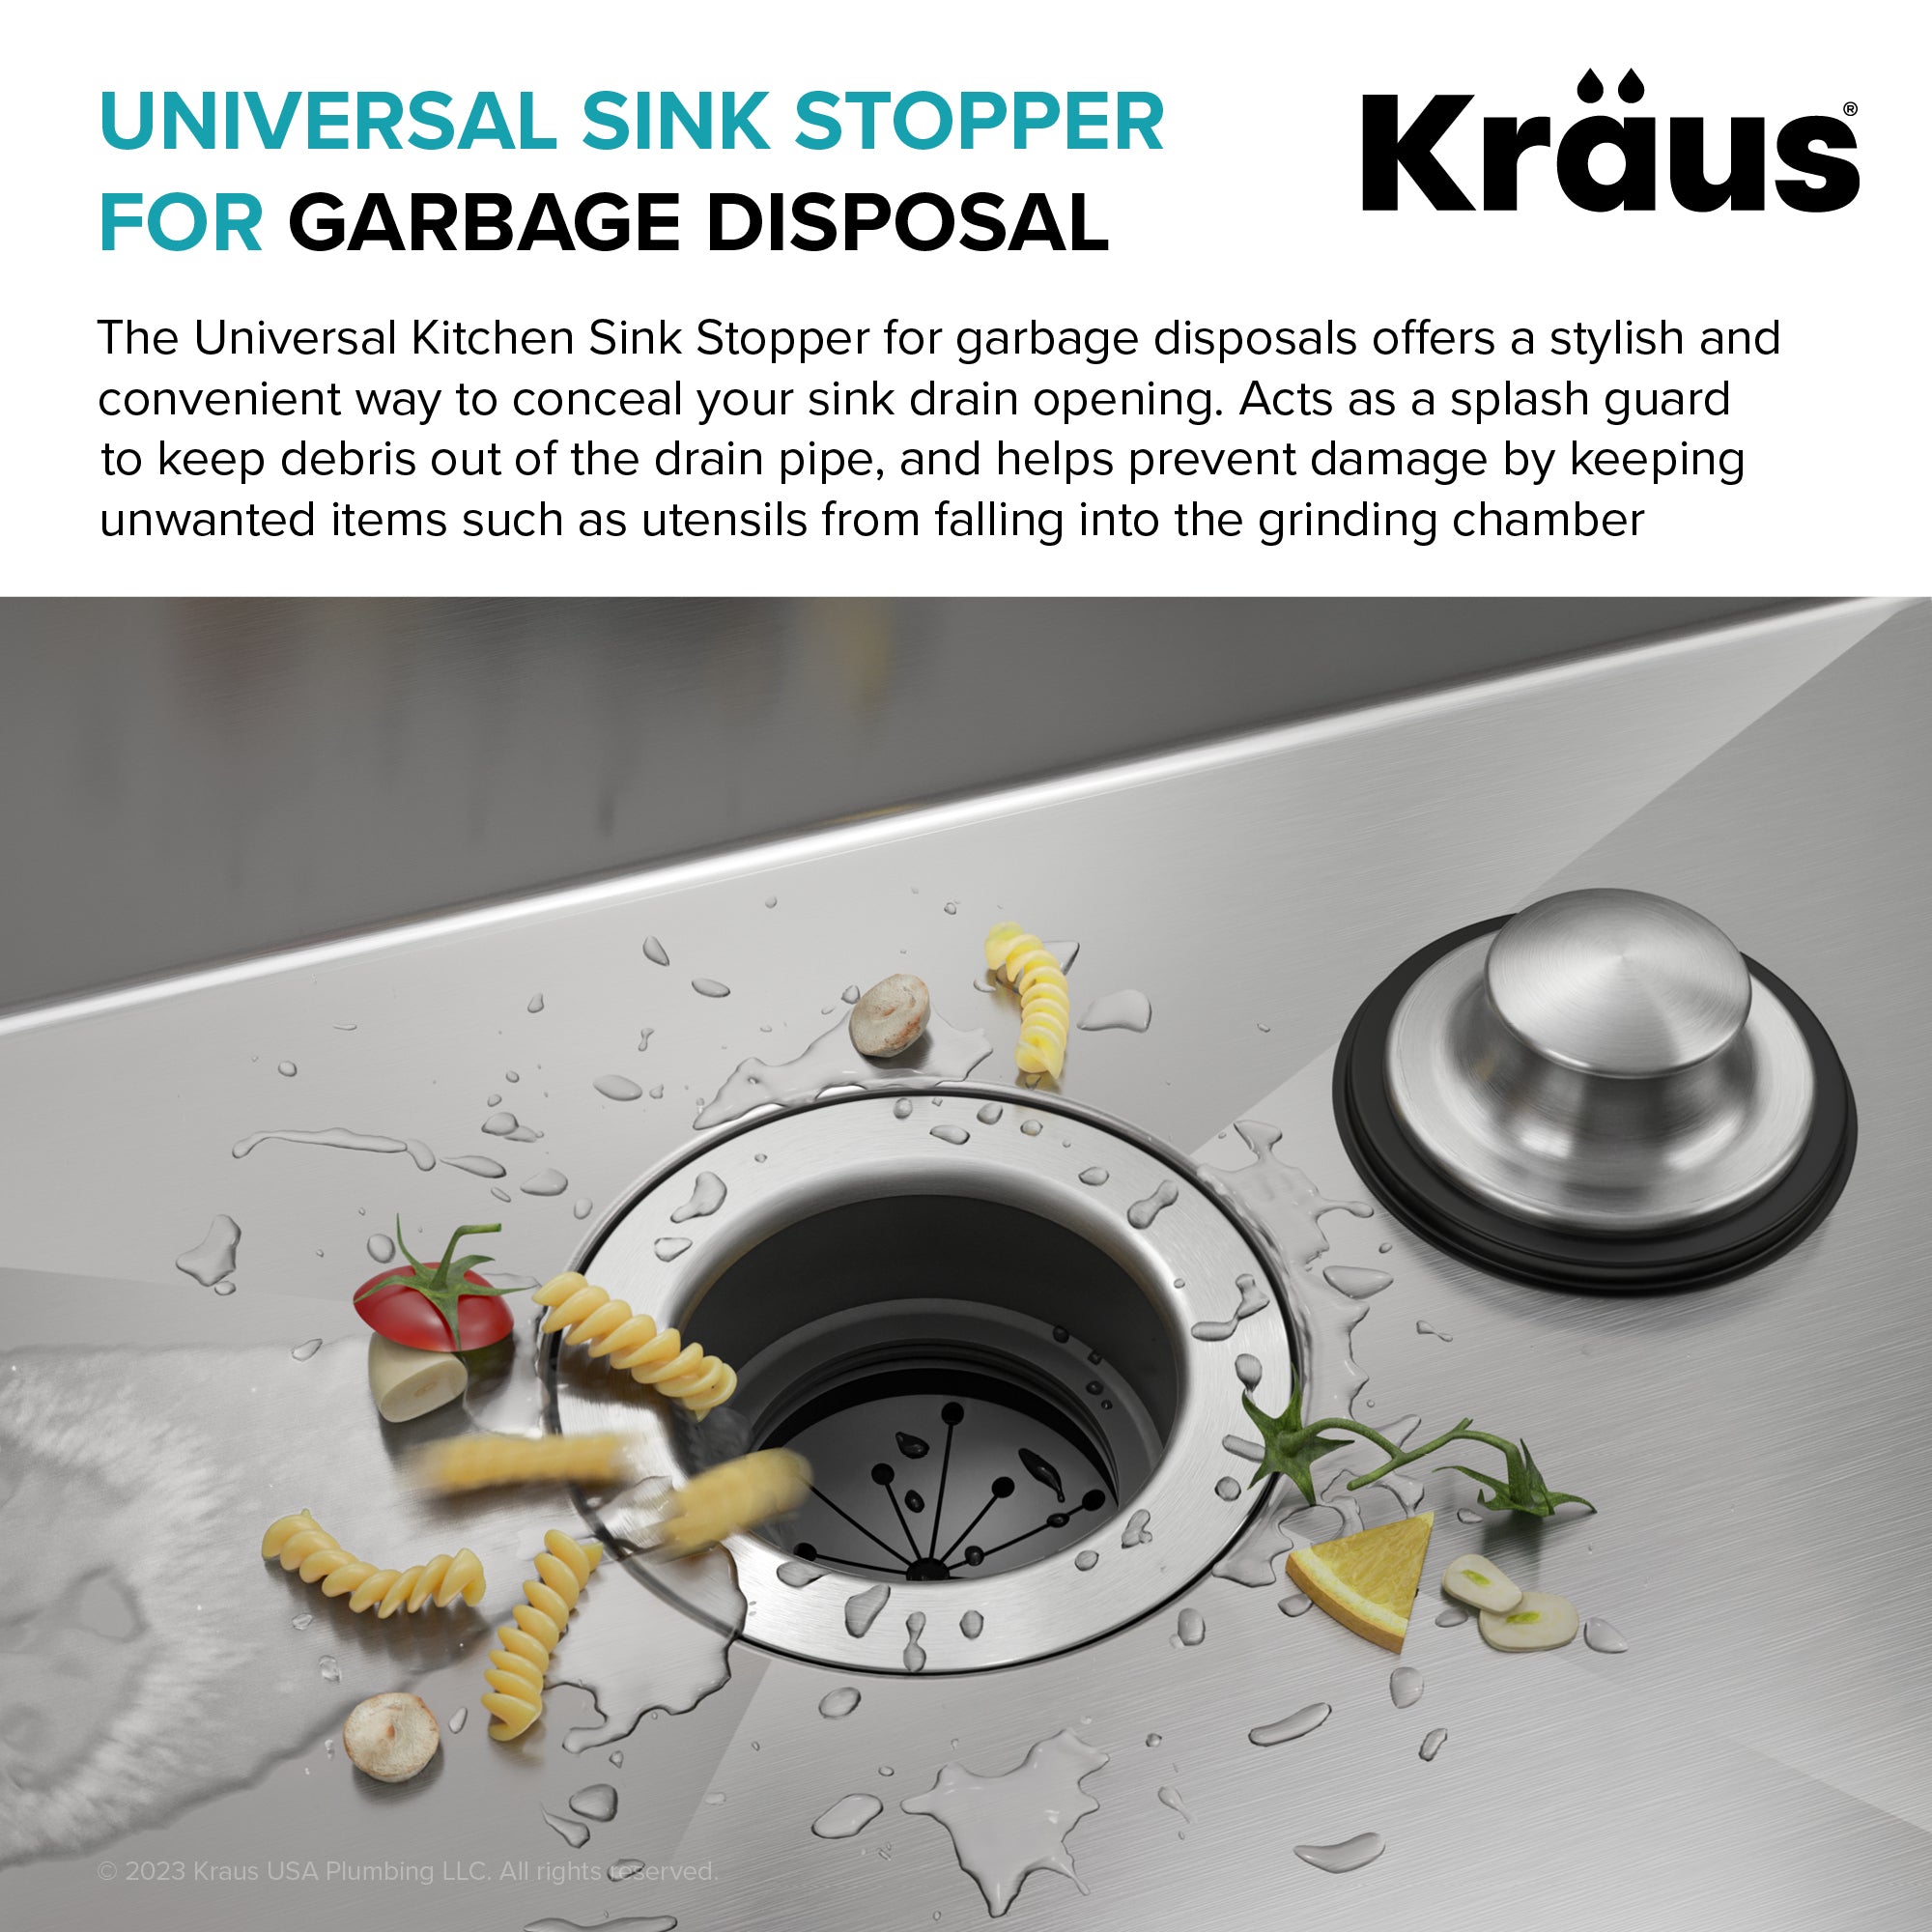 KRAUS Universal Kitchen Sink Stopper for Garbage Disposals